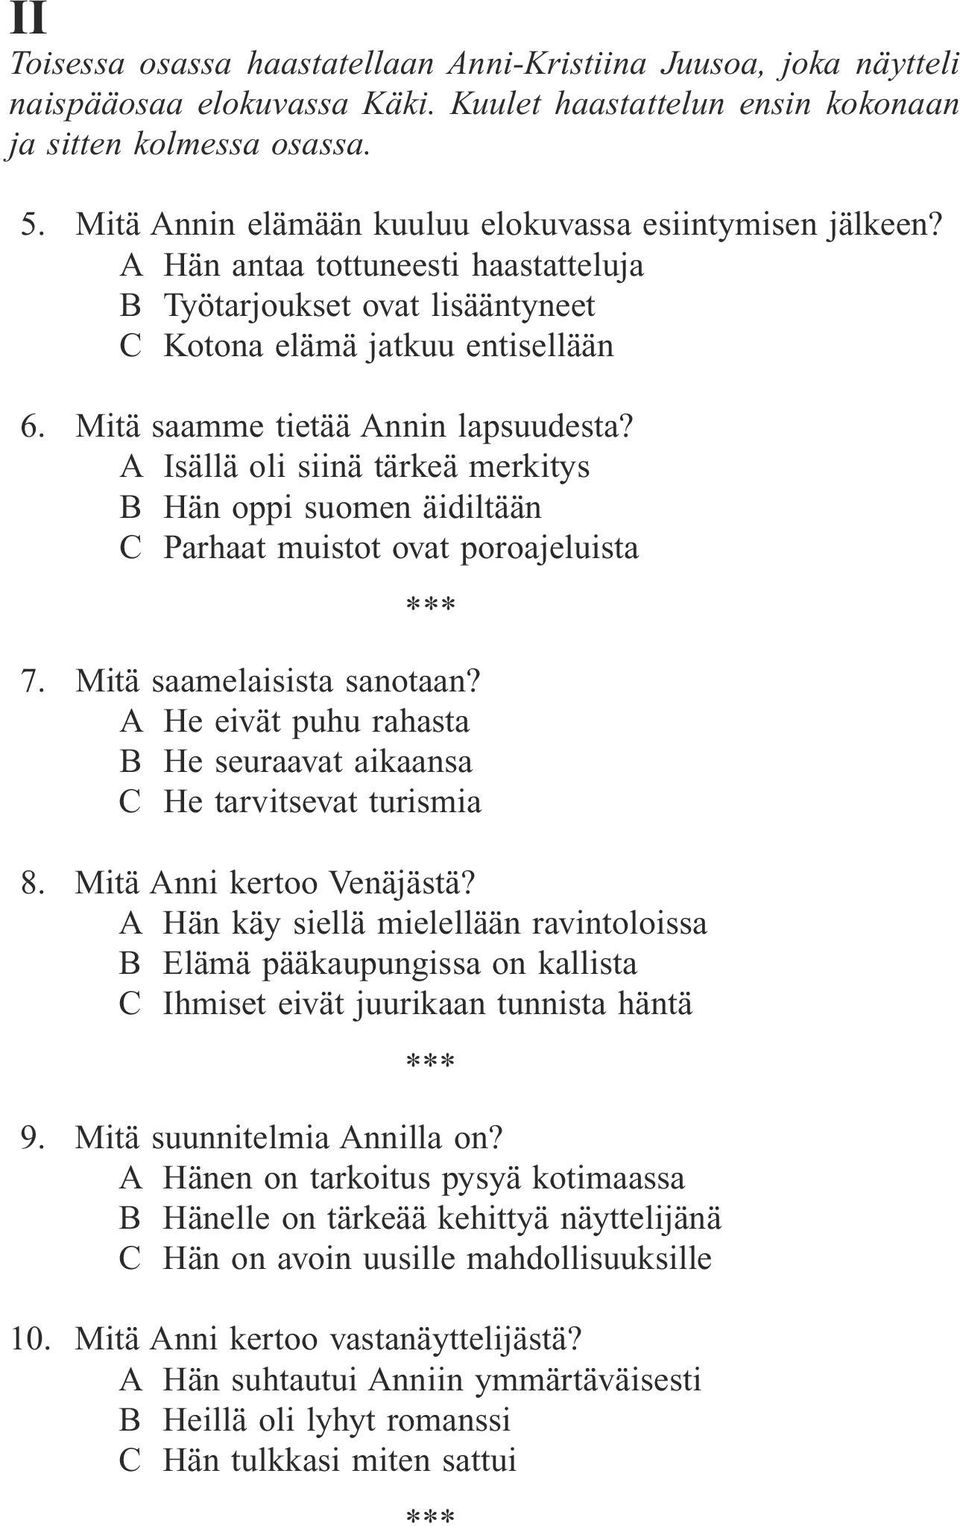 Mitä saamme tietää Annin lapsuudesta? A Isällä oli siinä tärkeä merkitys B Hän oppi suomen äidiltään C Parhaat muistot ovat poroajeluista 7. Mitä saamelaisista sanotaan?